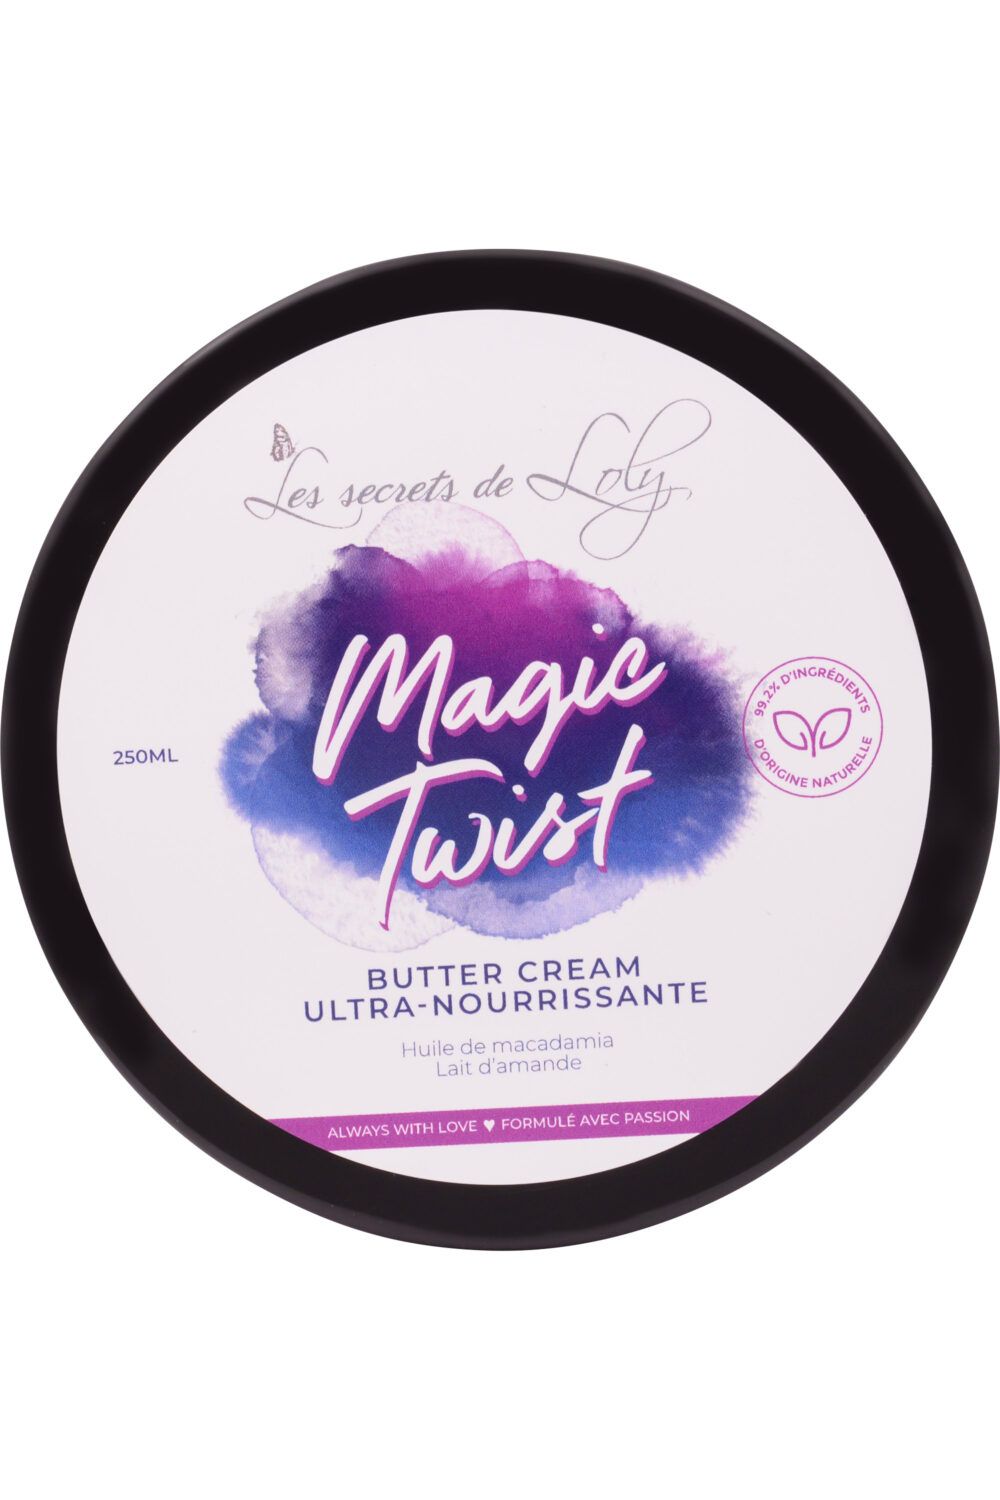 Les Secrets de Loly - Crème nourissante cheveux Magic Twist